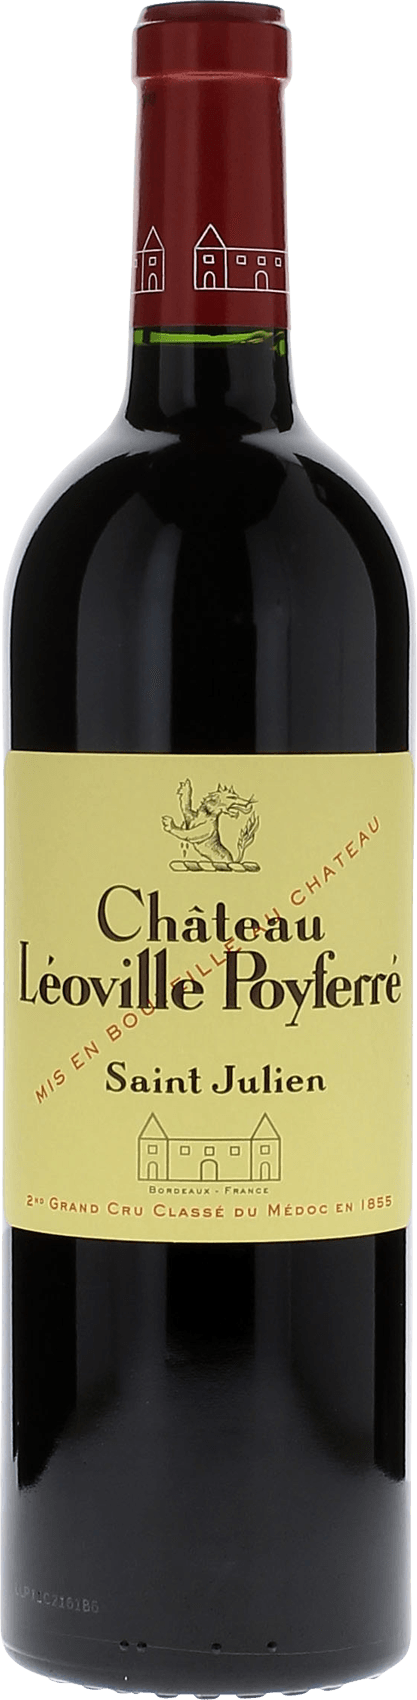 Leoville poyferre 2019 2me Grand cru class Saint-Julien, Bordeaux rouge